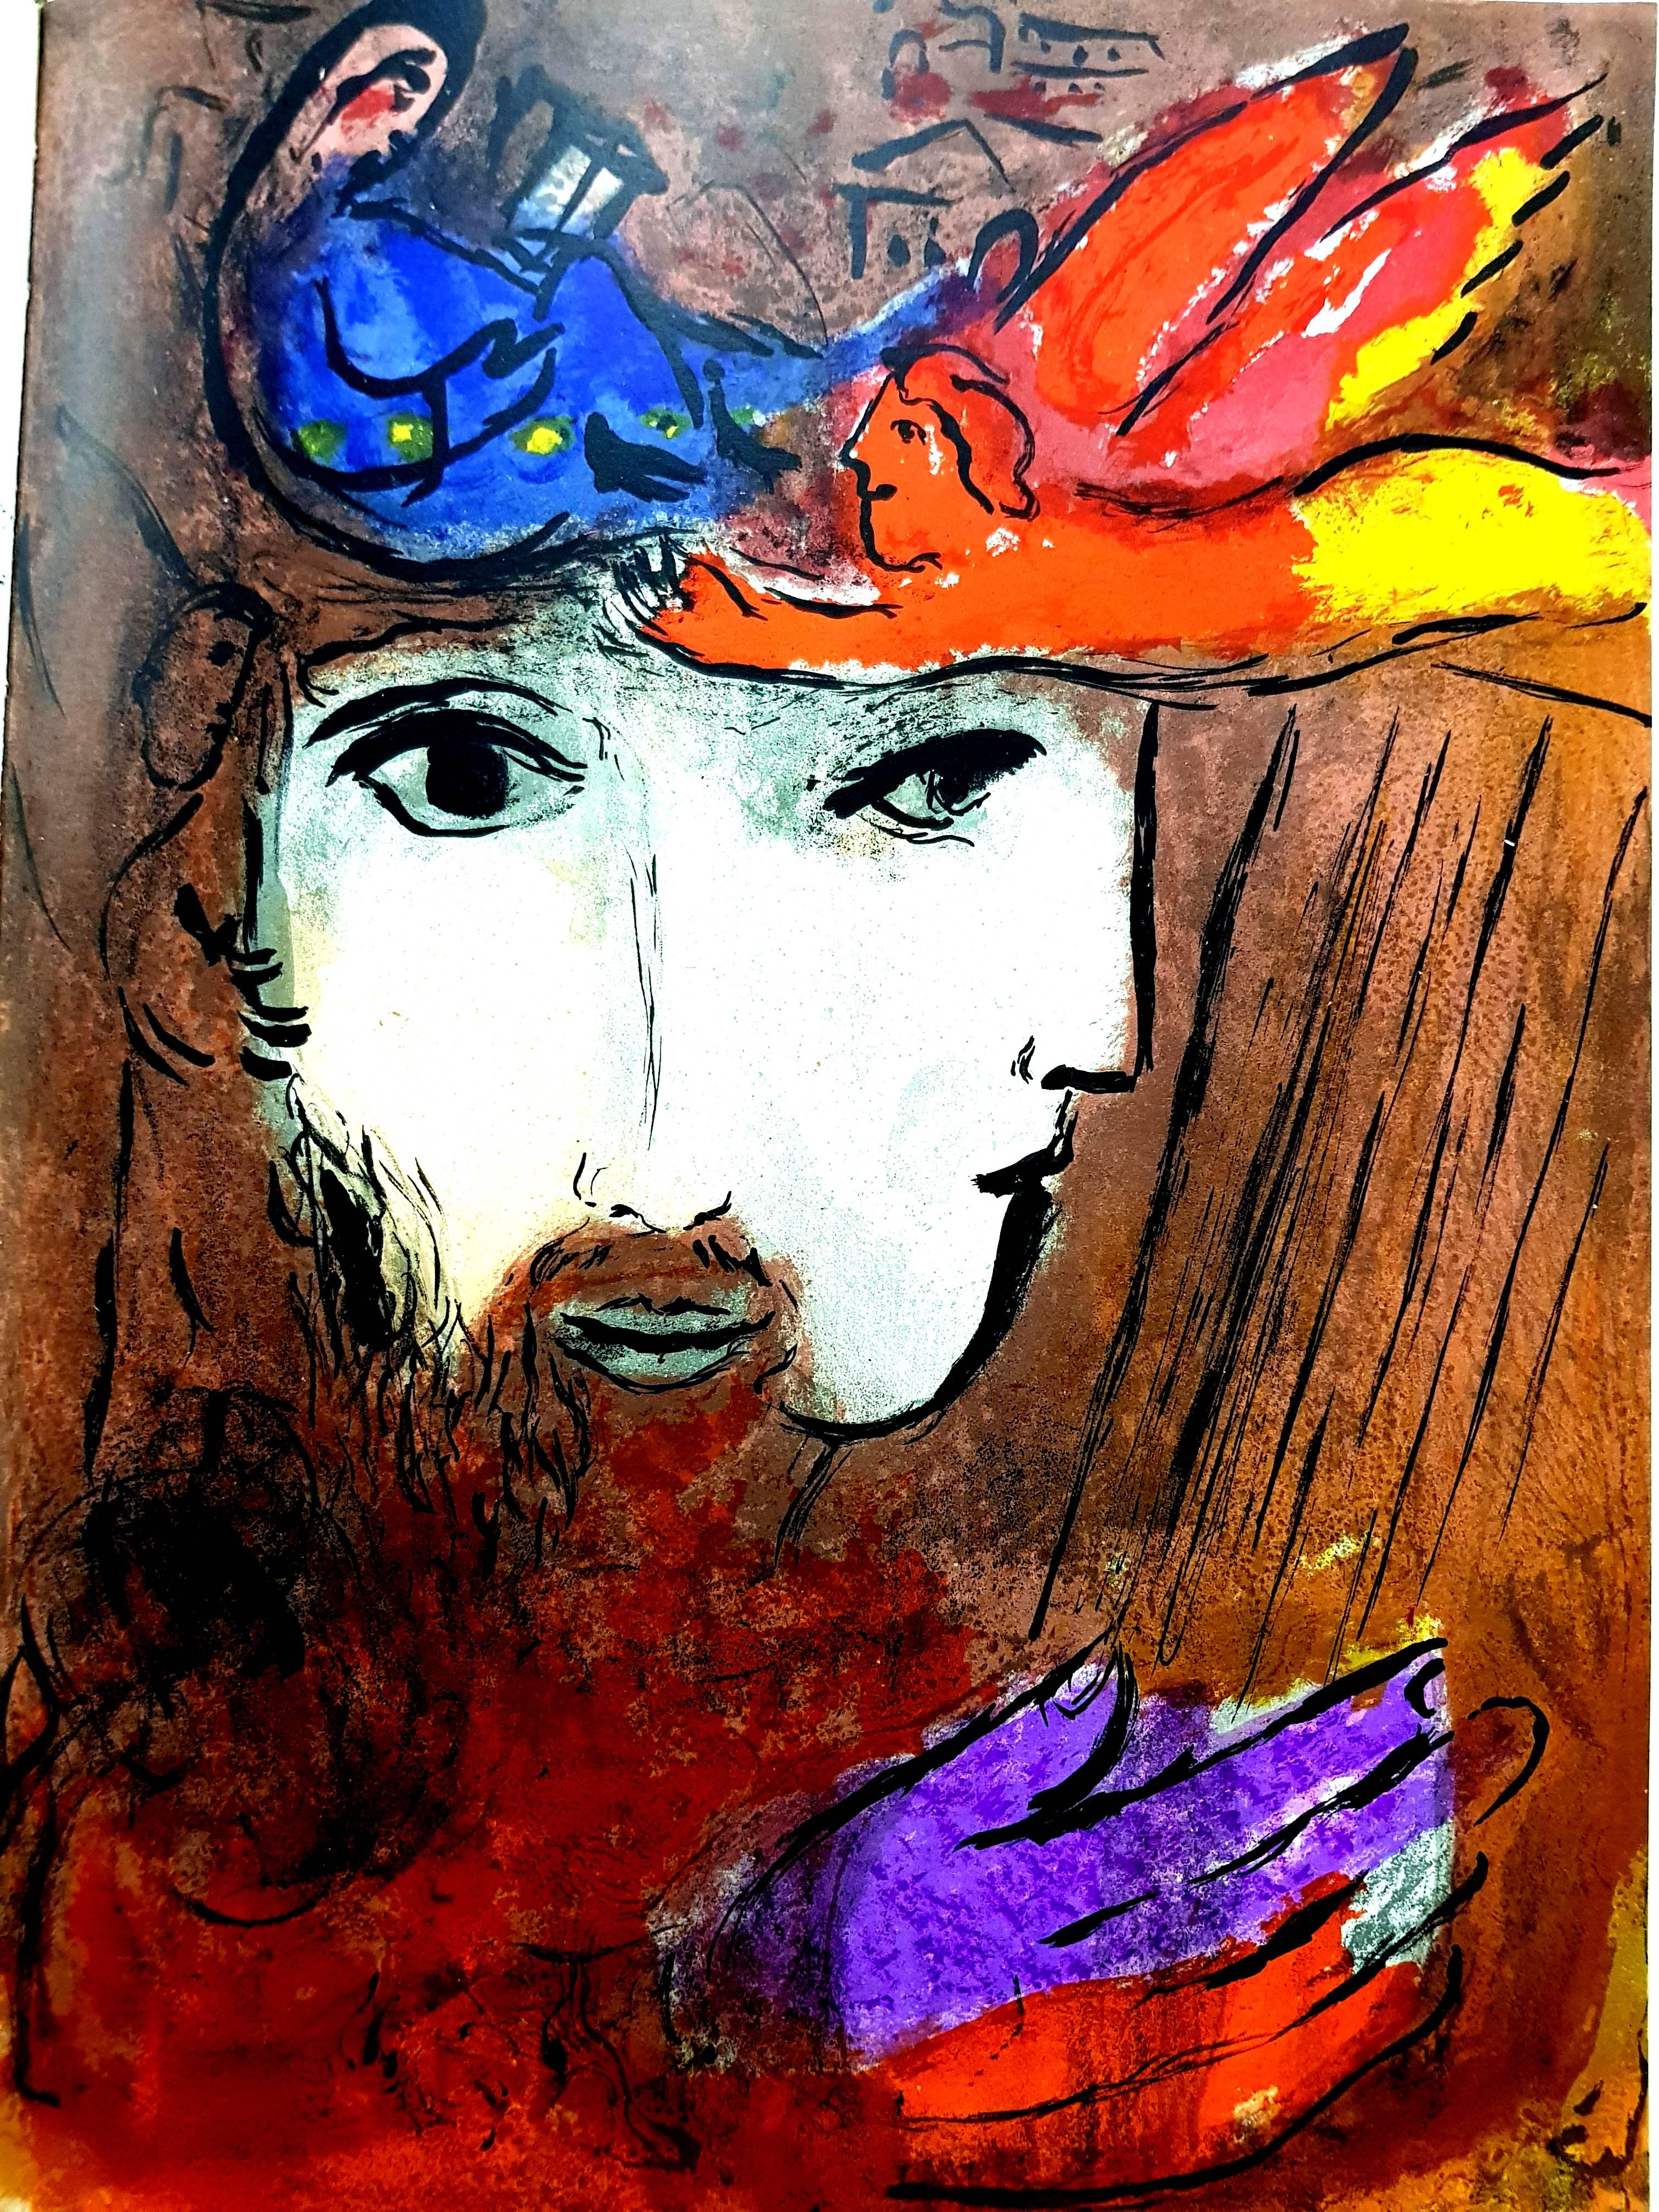 Marc Chagall, Original Lithograph depicting an instant of the Bible.
Technique:	Original lithograph in colours
Year:	1956
Sizes:	35,5 x 26 cm / 14" x 10.2" (sheet)
Published by:	Éditions de la Revue Verve, Tériade, Paris
Printed by:	Atelier Mourlot,